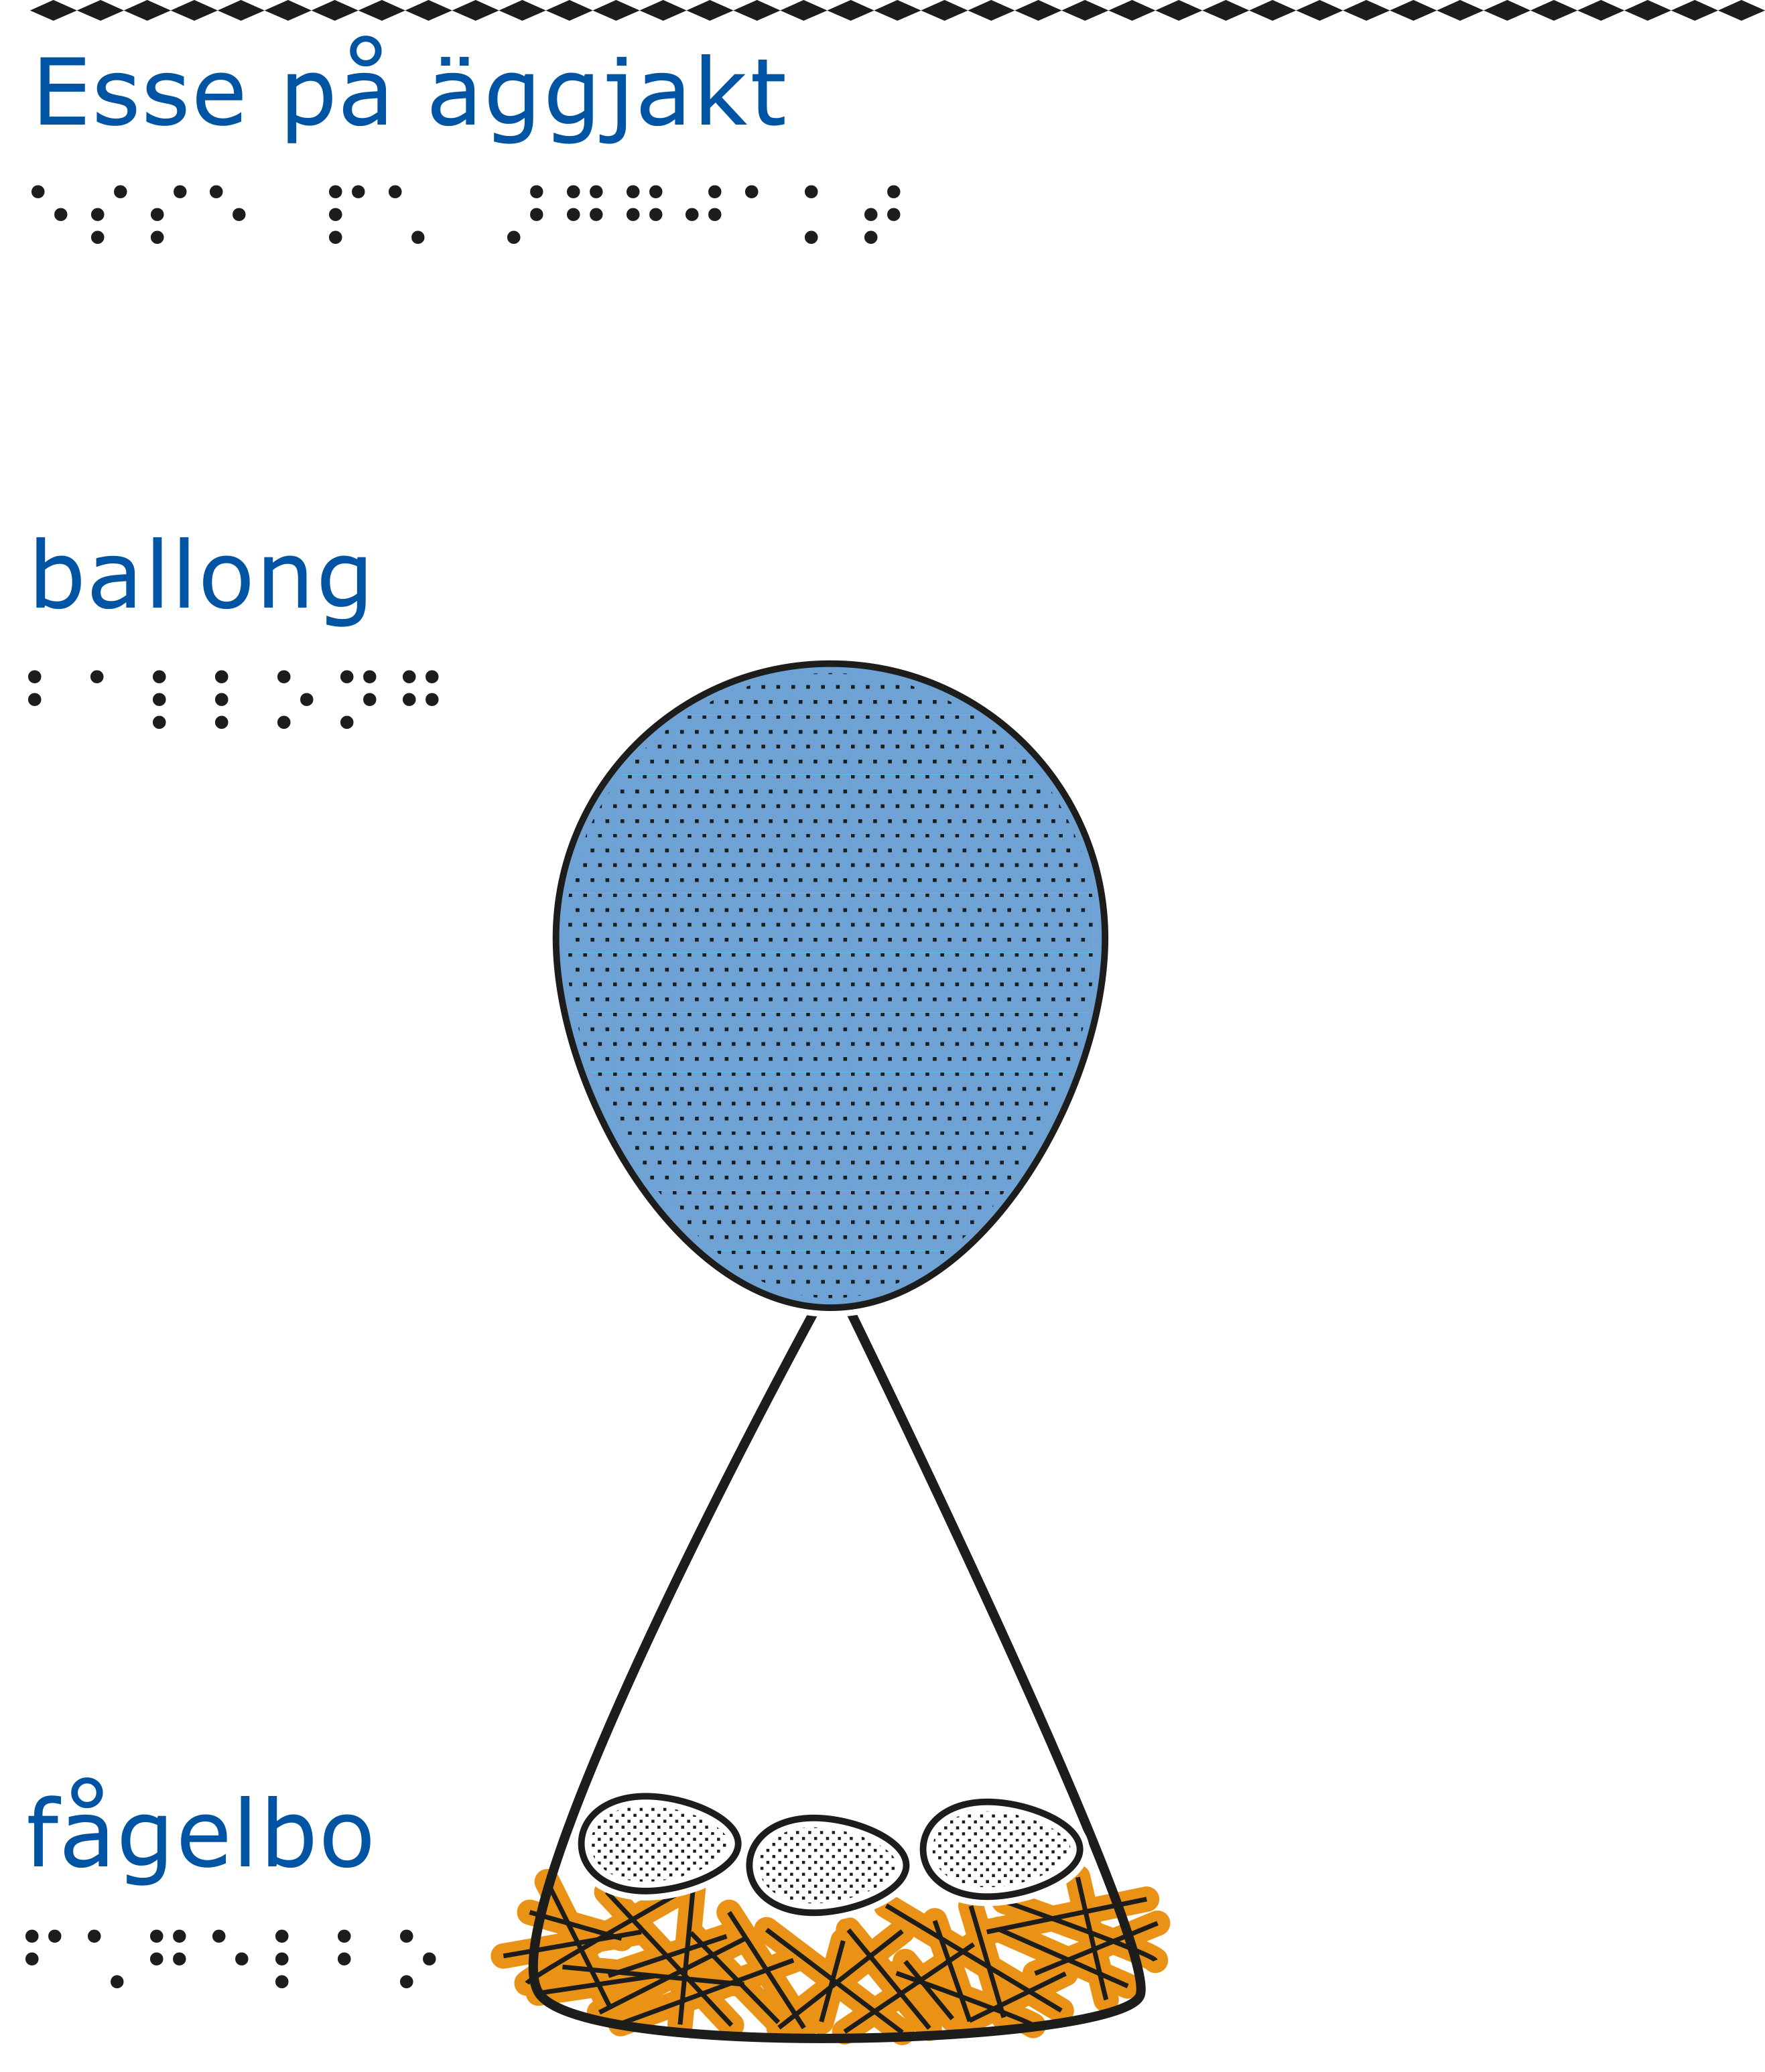 En blå ballong som är fastknuten i ett fågelbo med tre ägg i. Vit bakgrund.